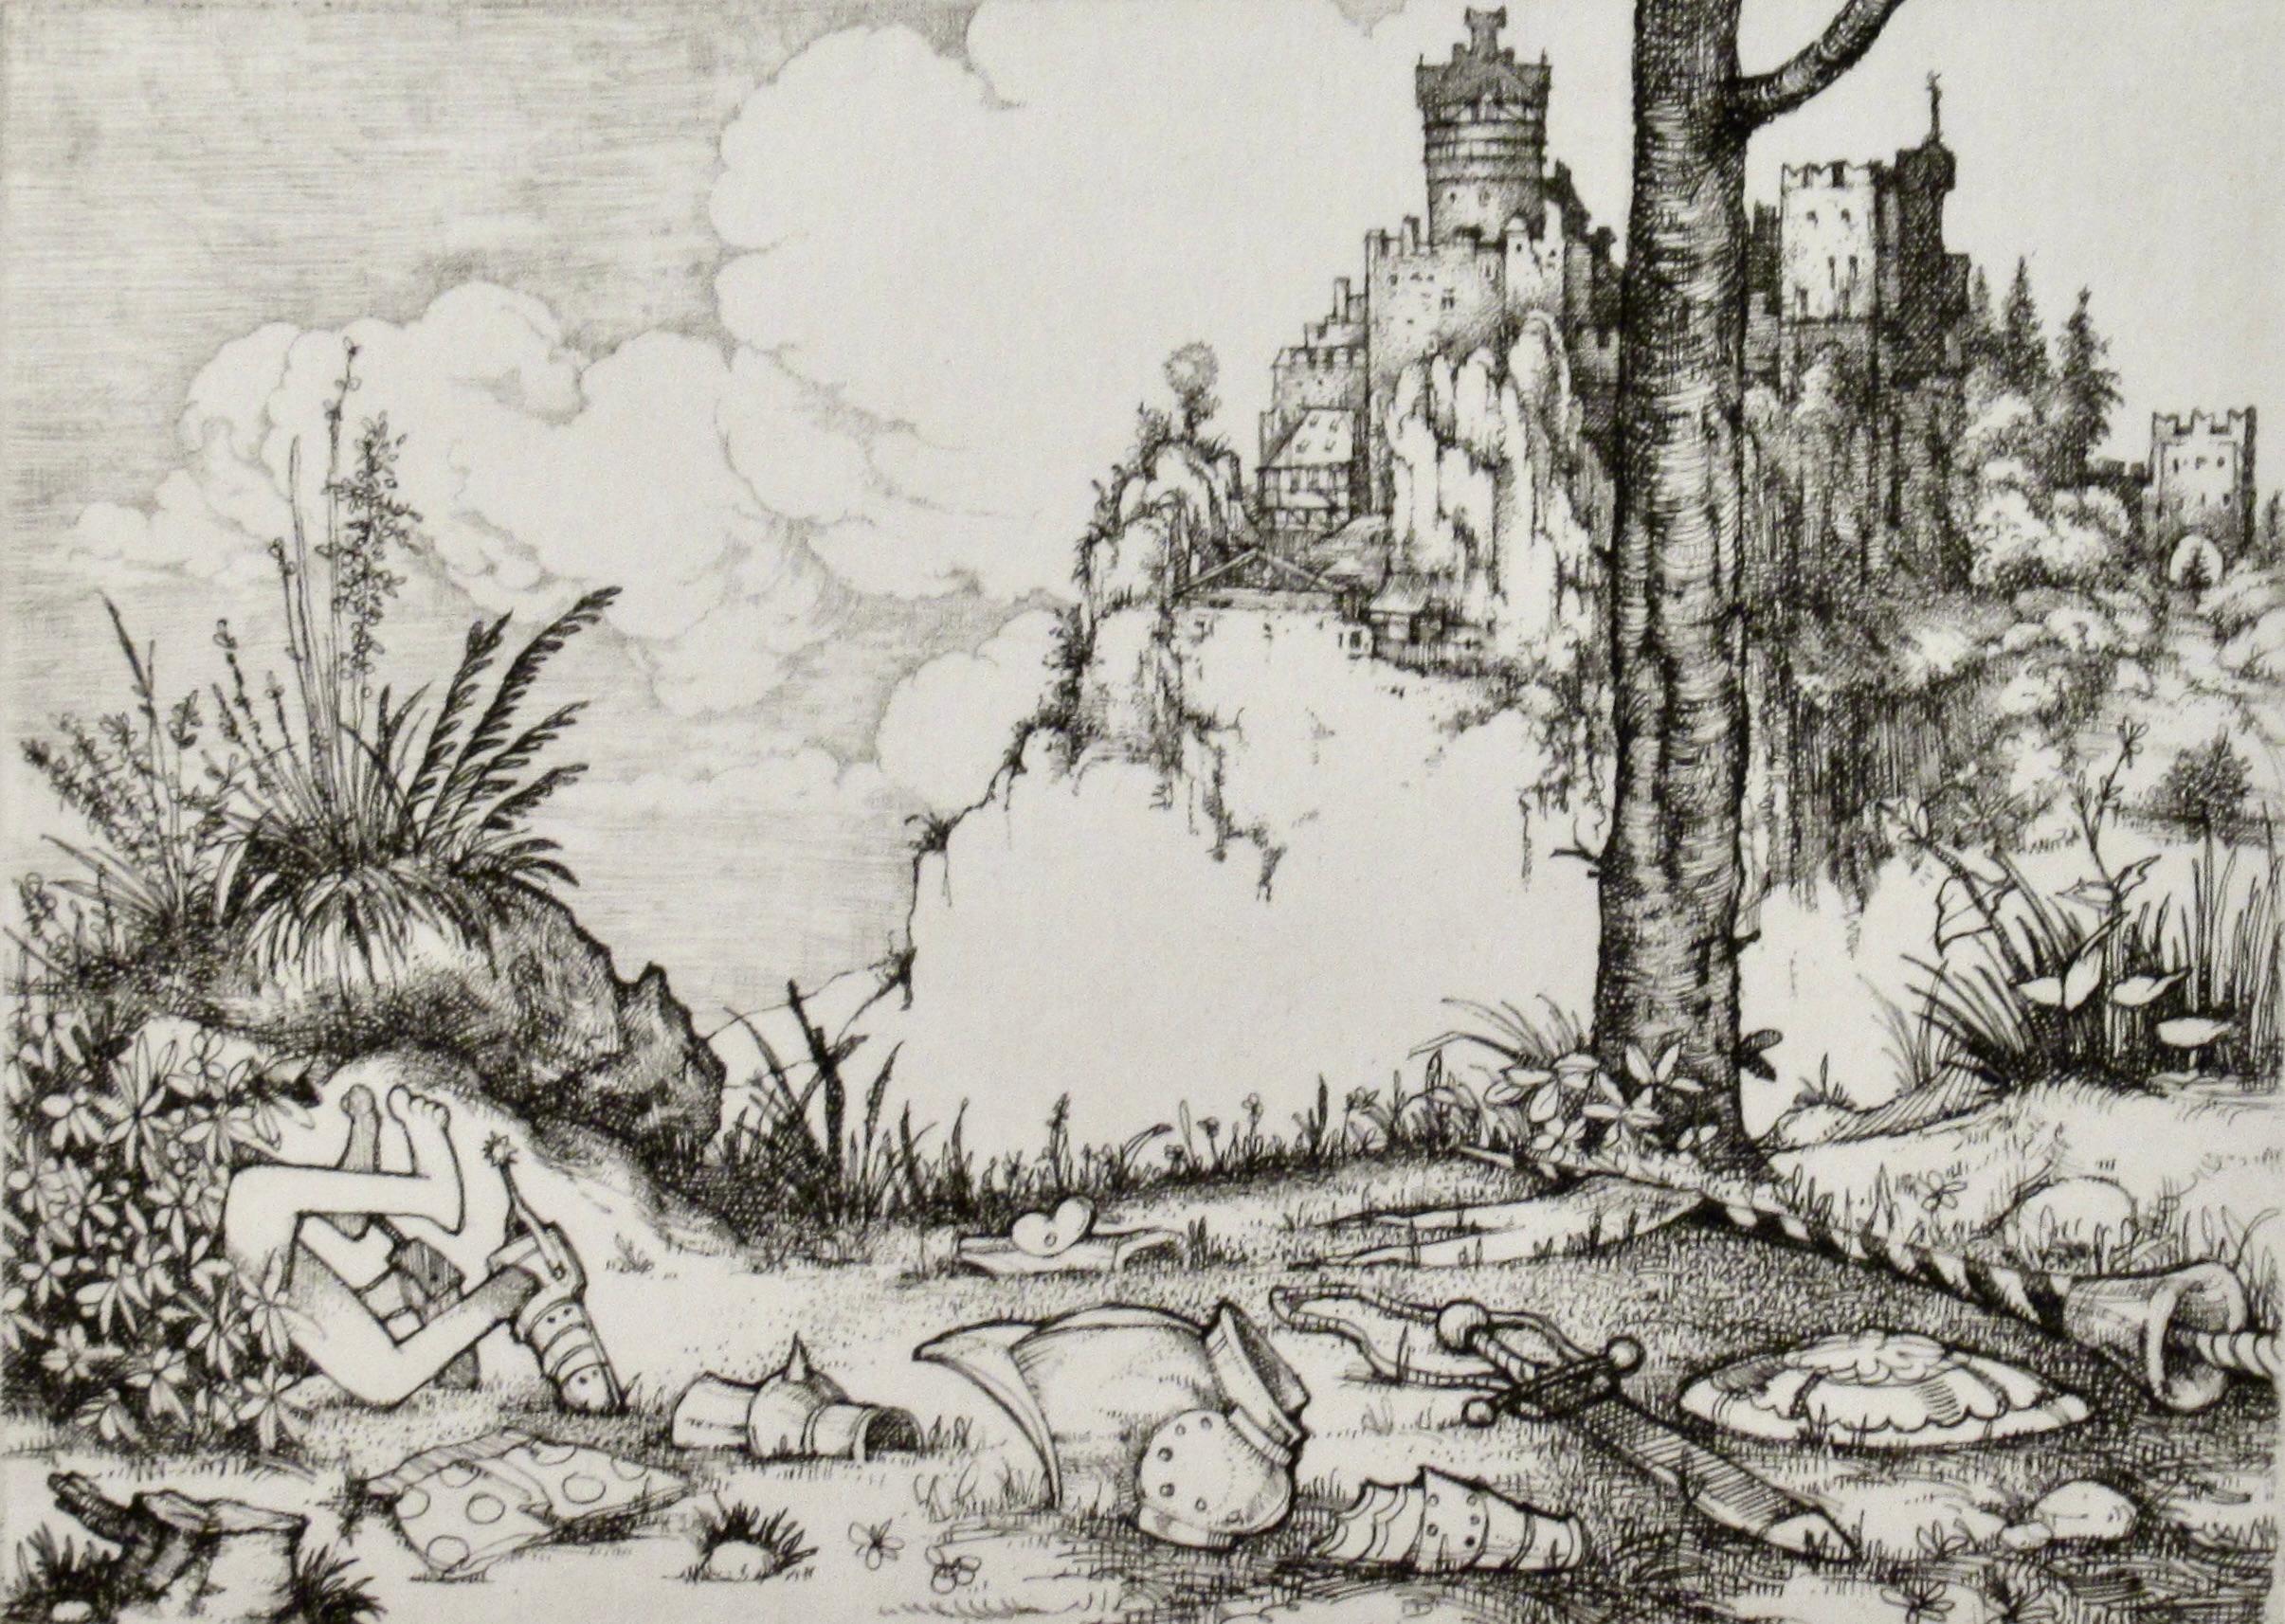 scène érotique médiévale - Print de Charles Bragg